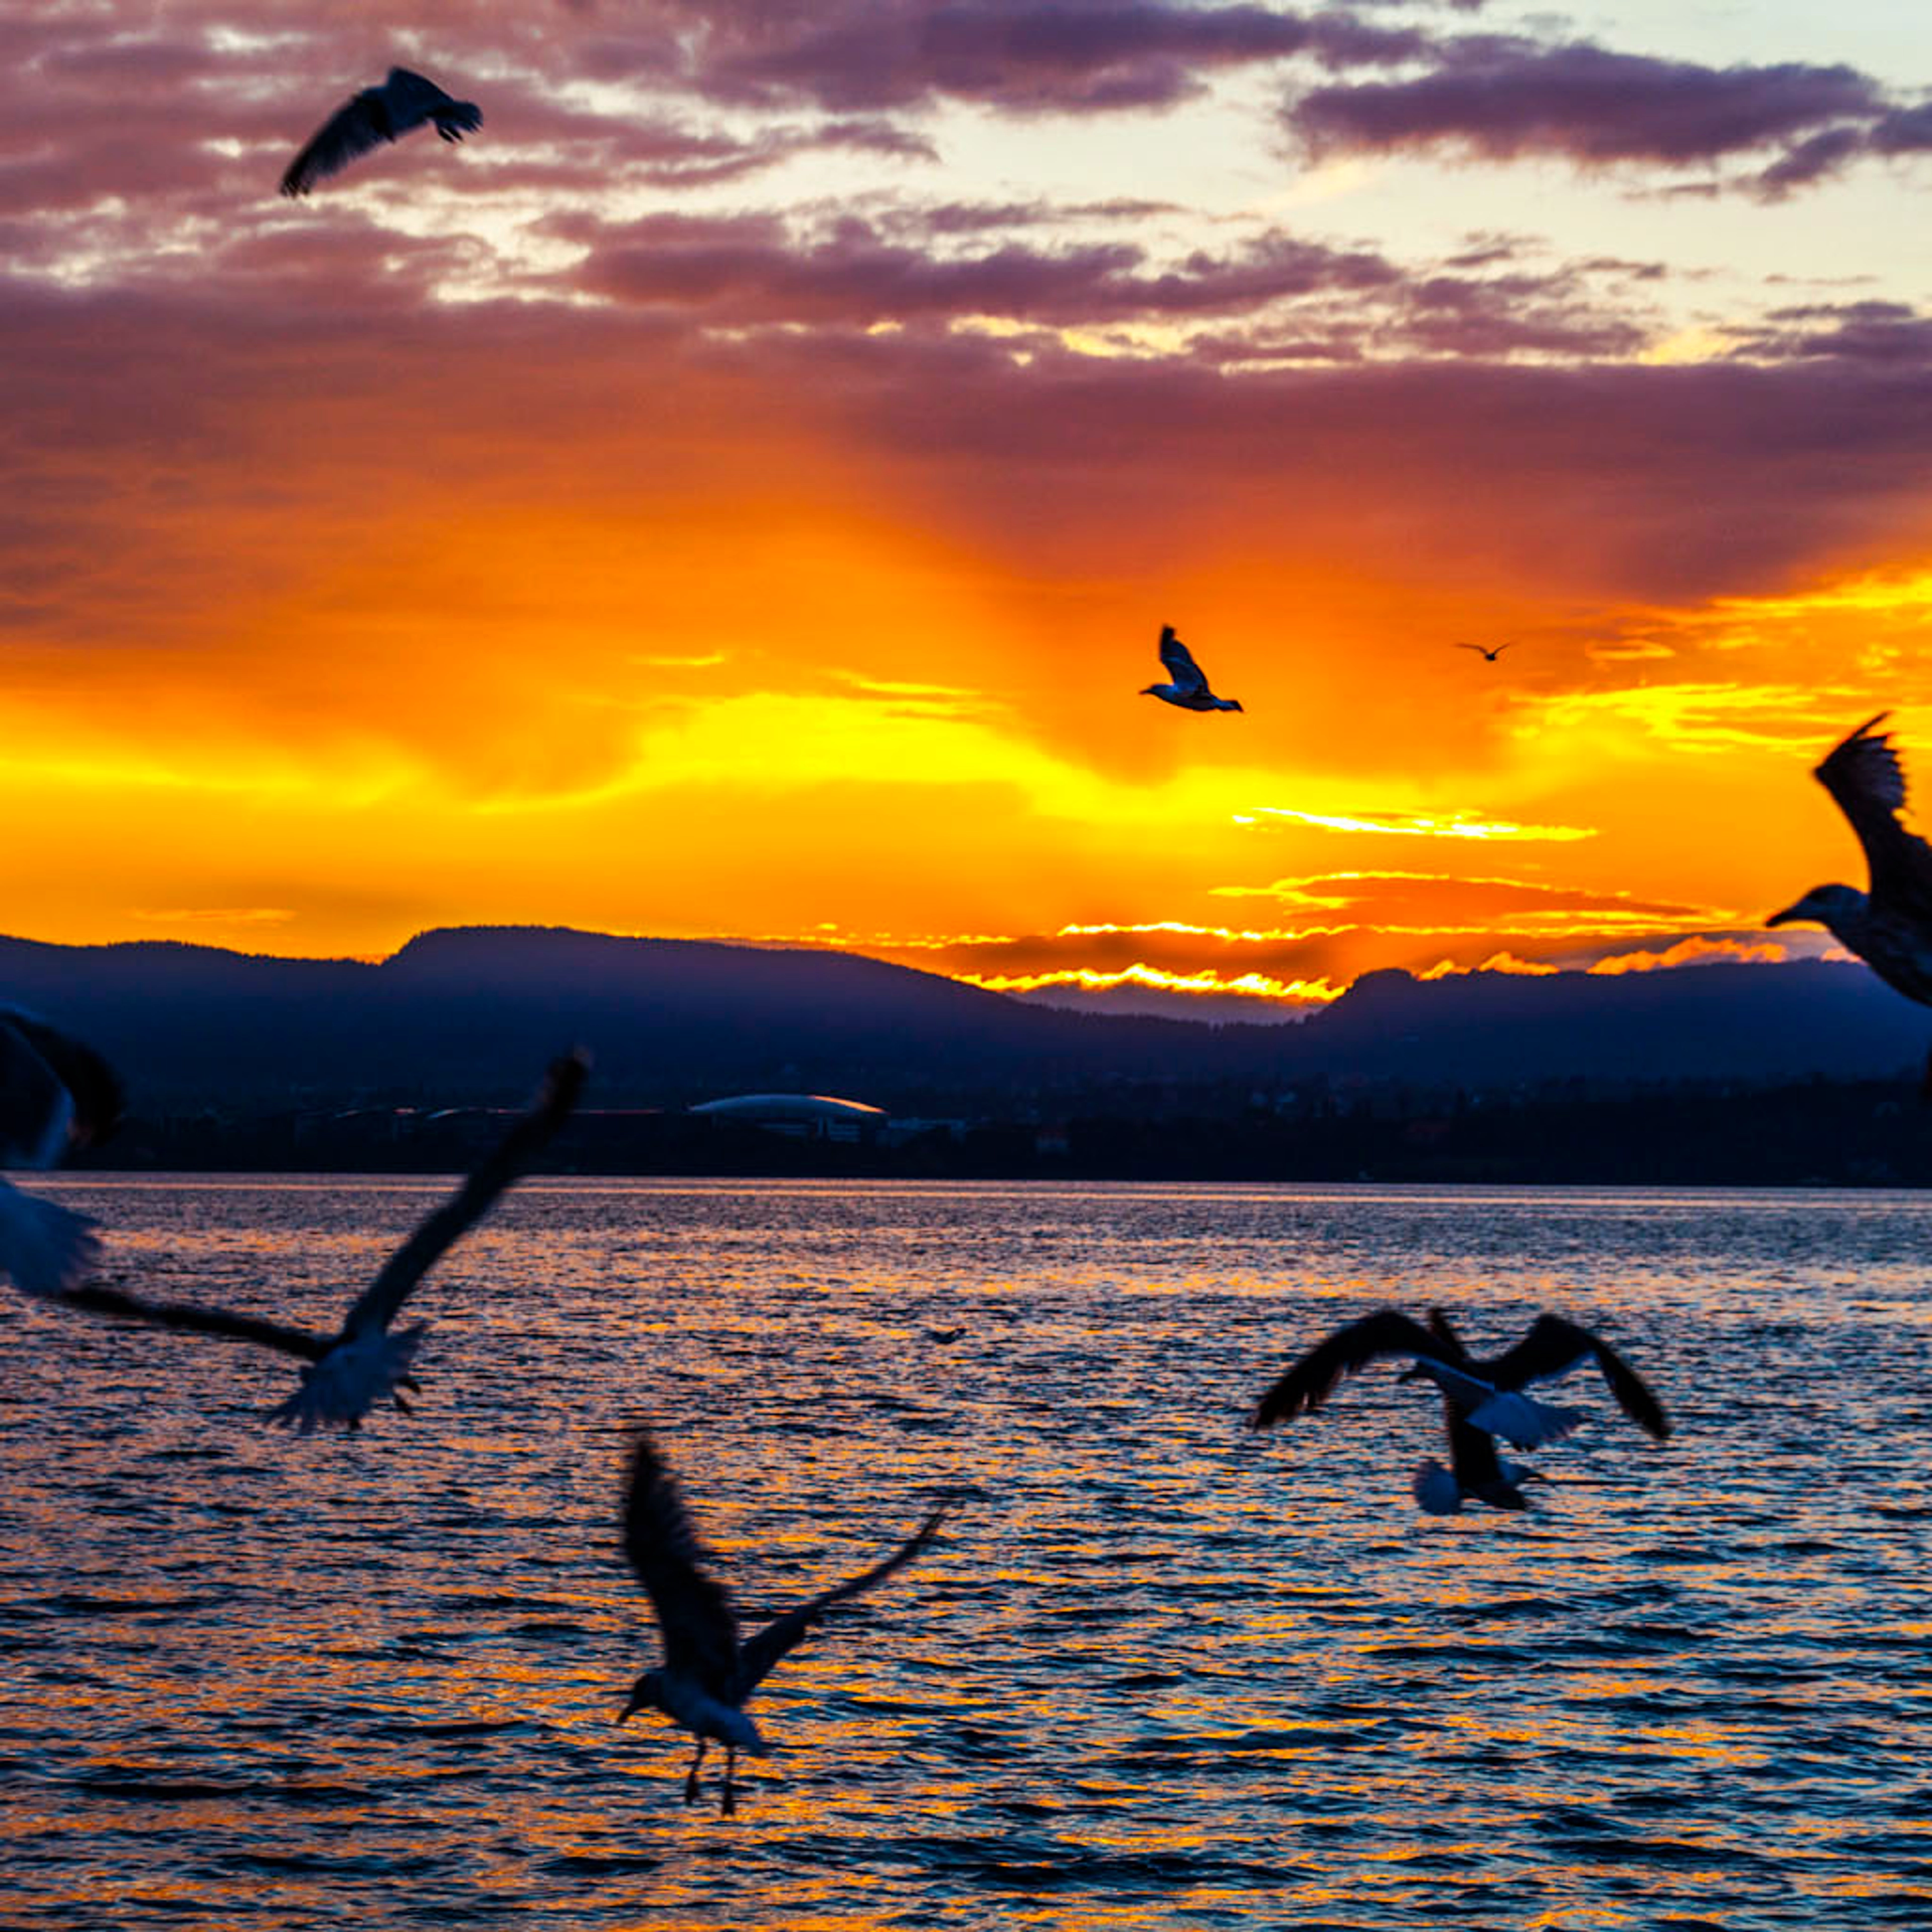 Sonnenuntergang – Fjordkreuzfahrt auf dem Oslofjord mit Garnelenbuffet – Oslo, Norwegen